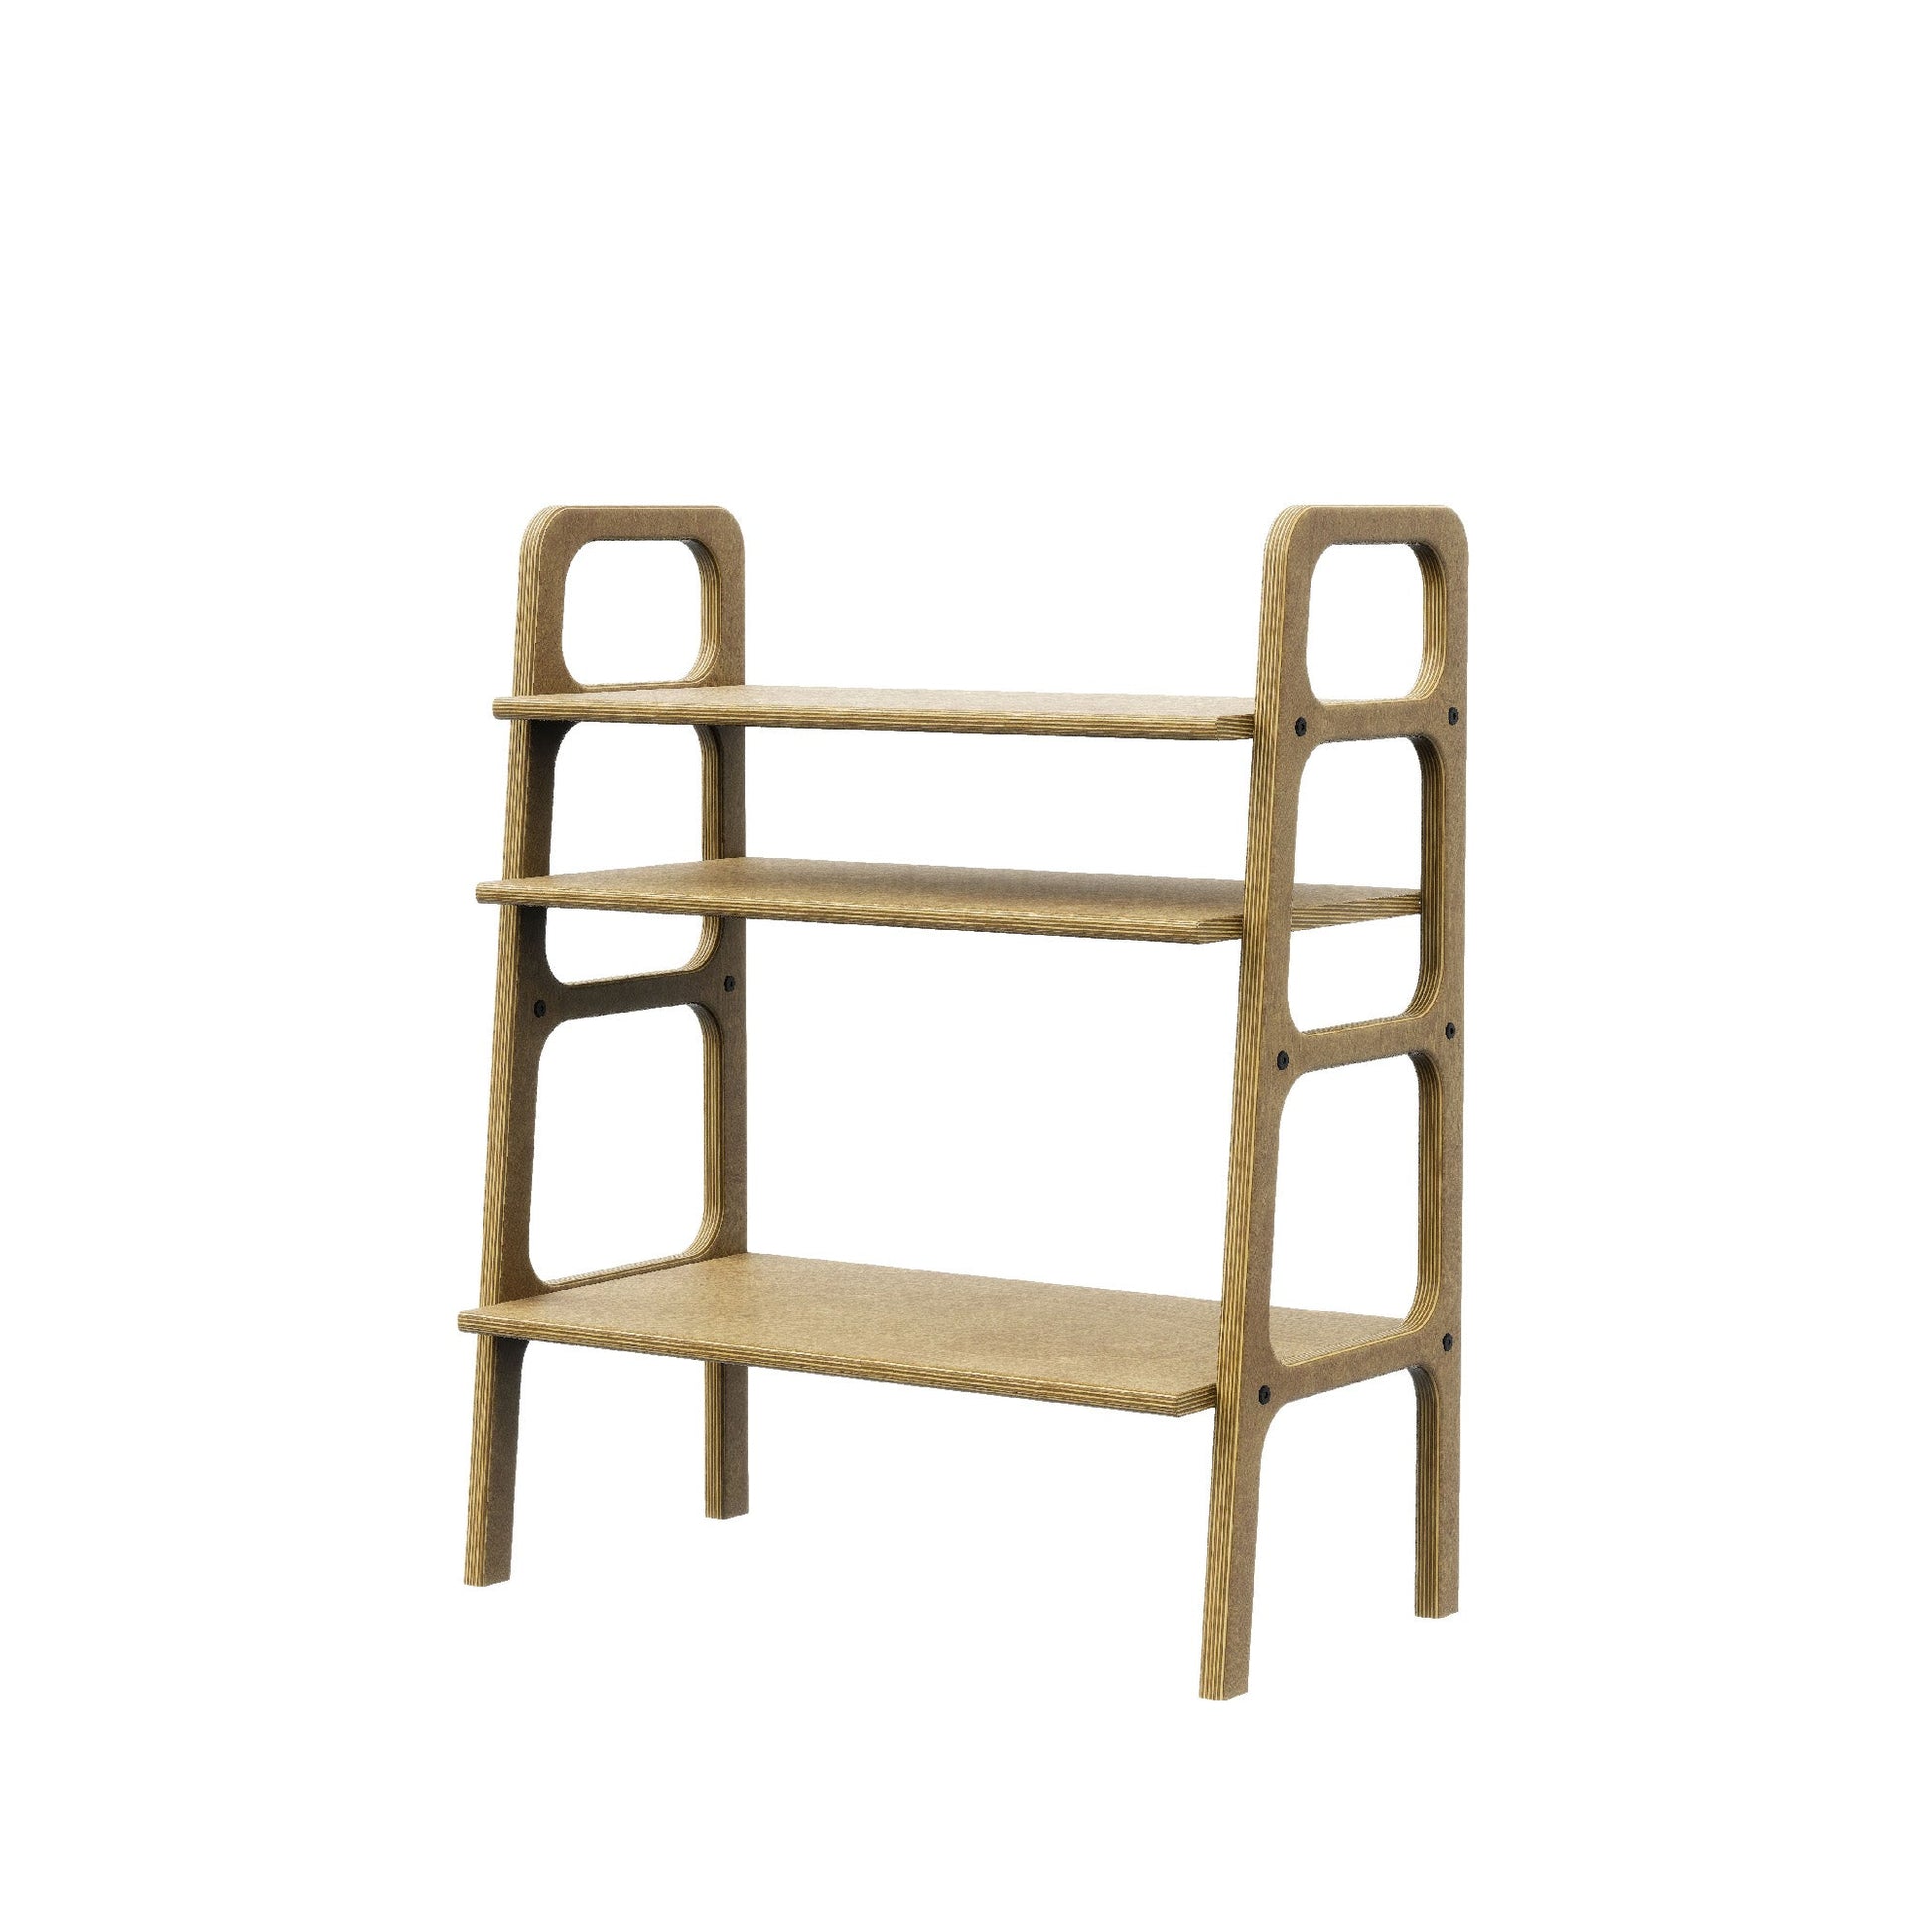 ladder-bookshelf-mid-century-design-vinyl-storage